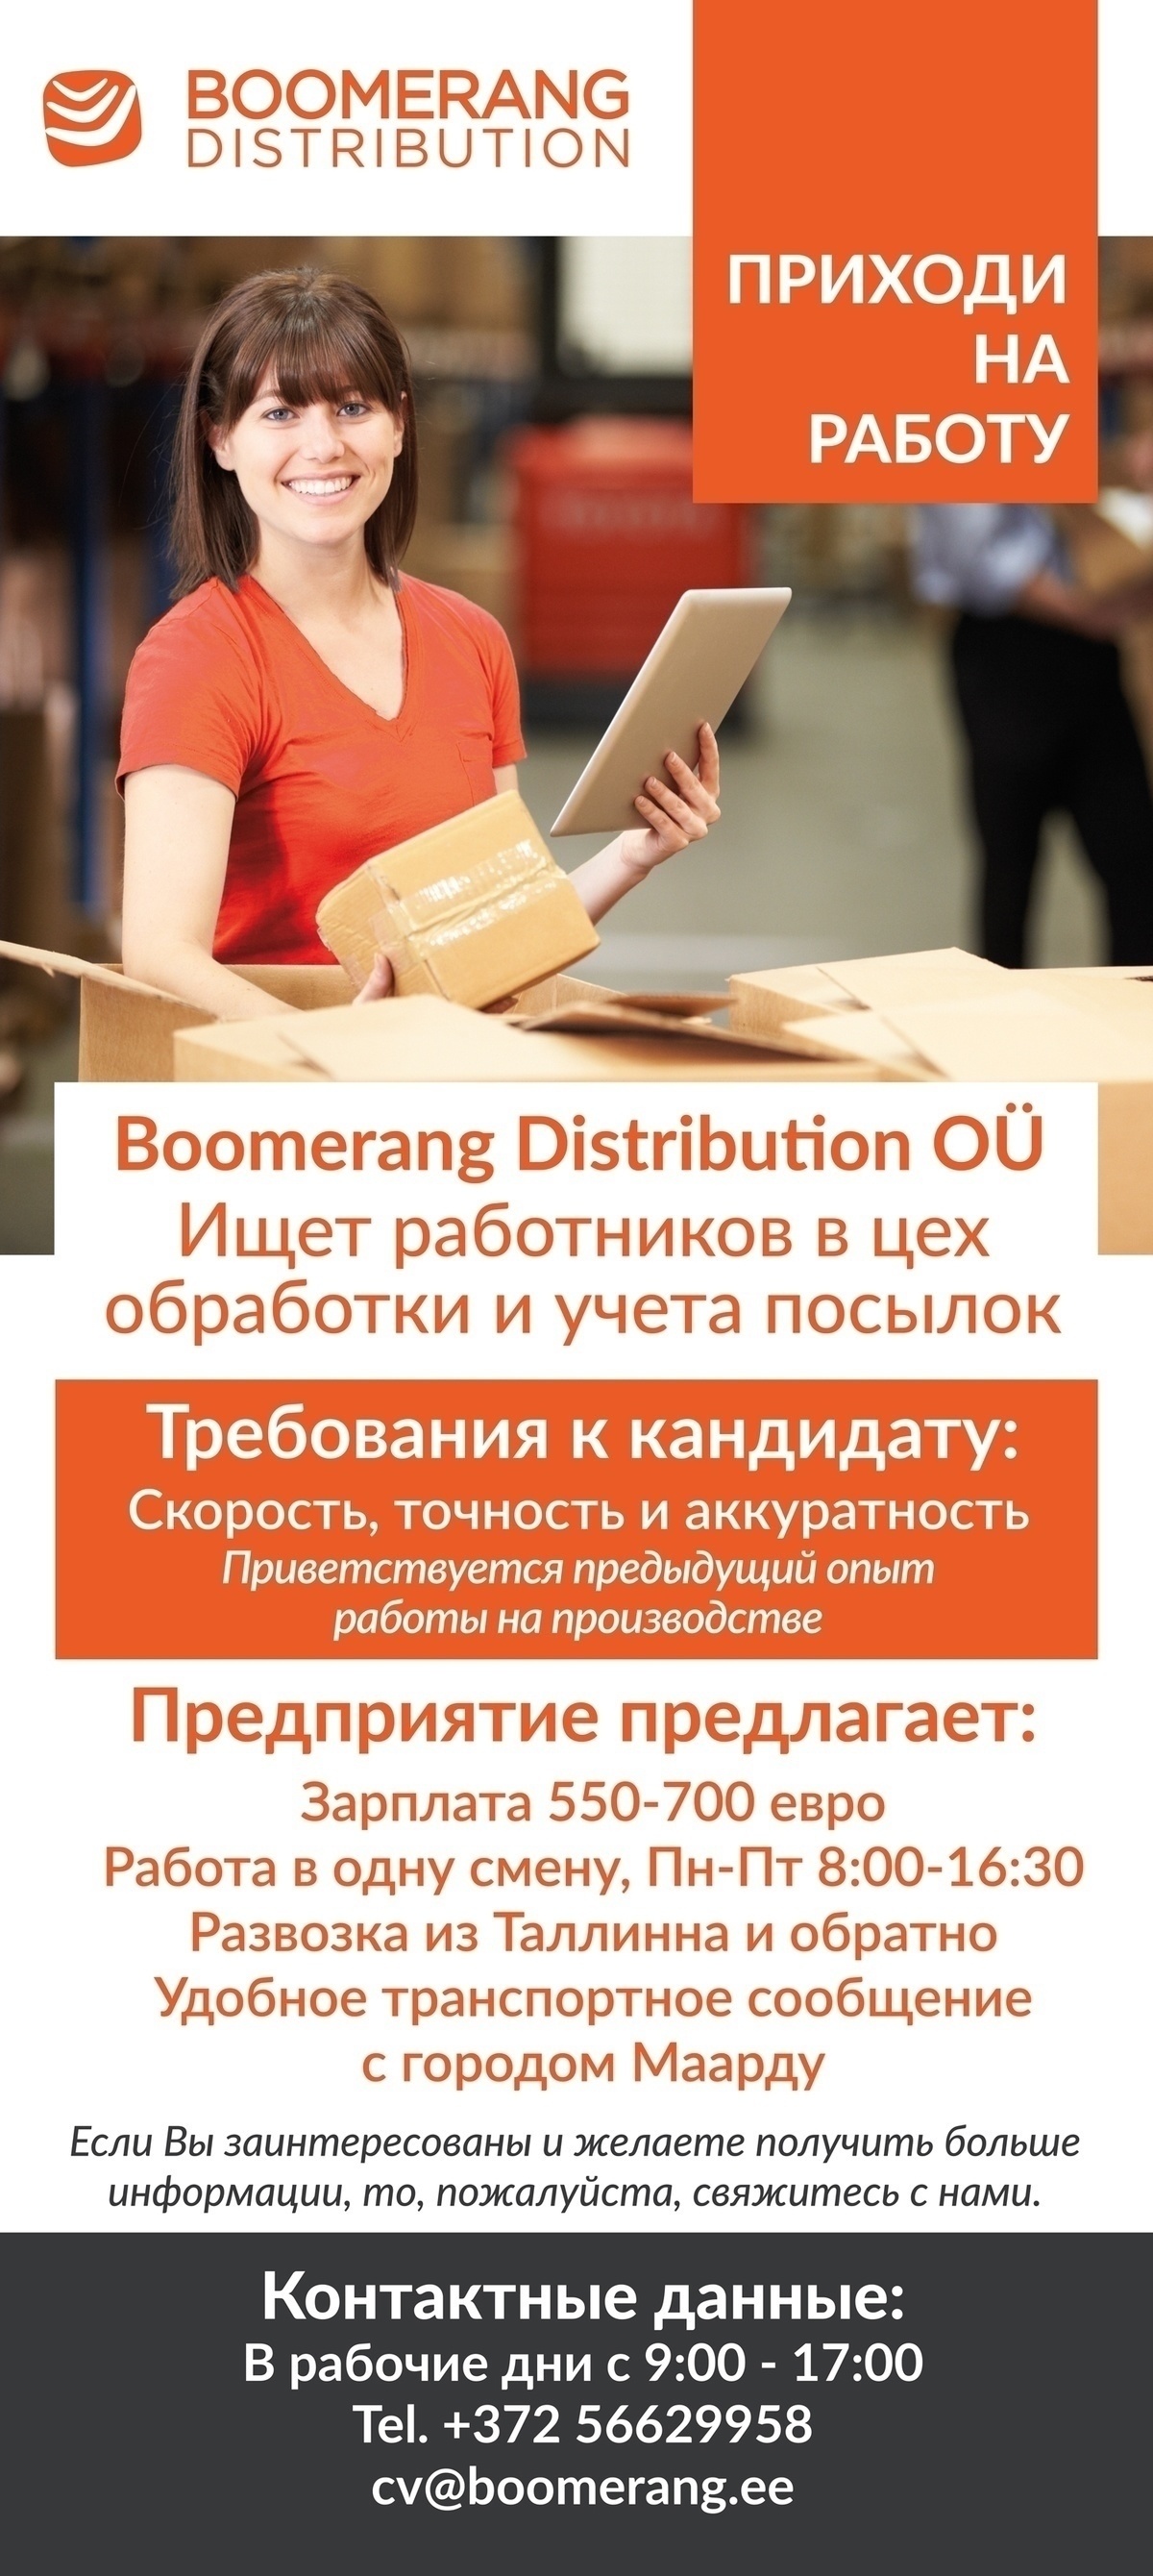 Boomerang Distribution OÜ Производственный работник